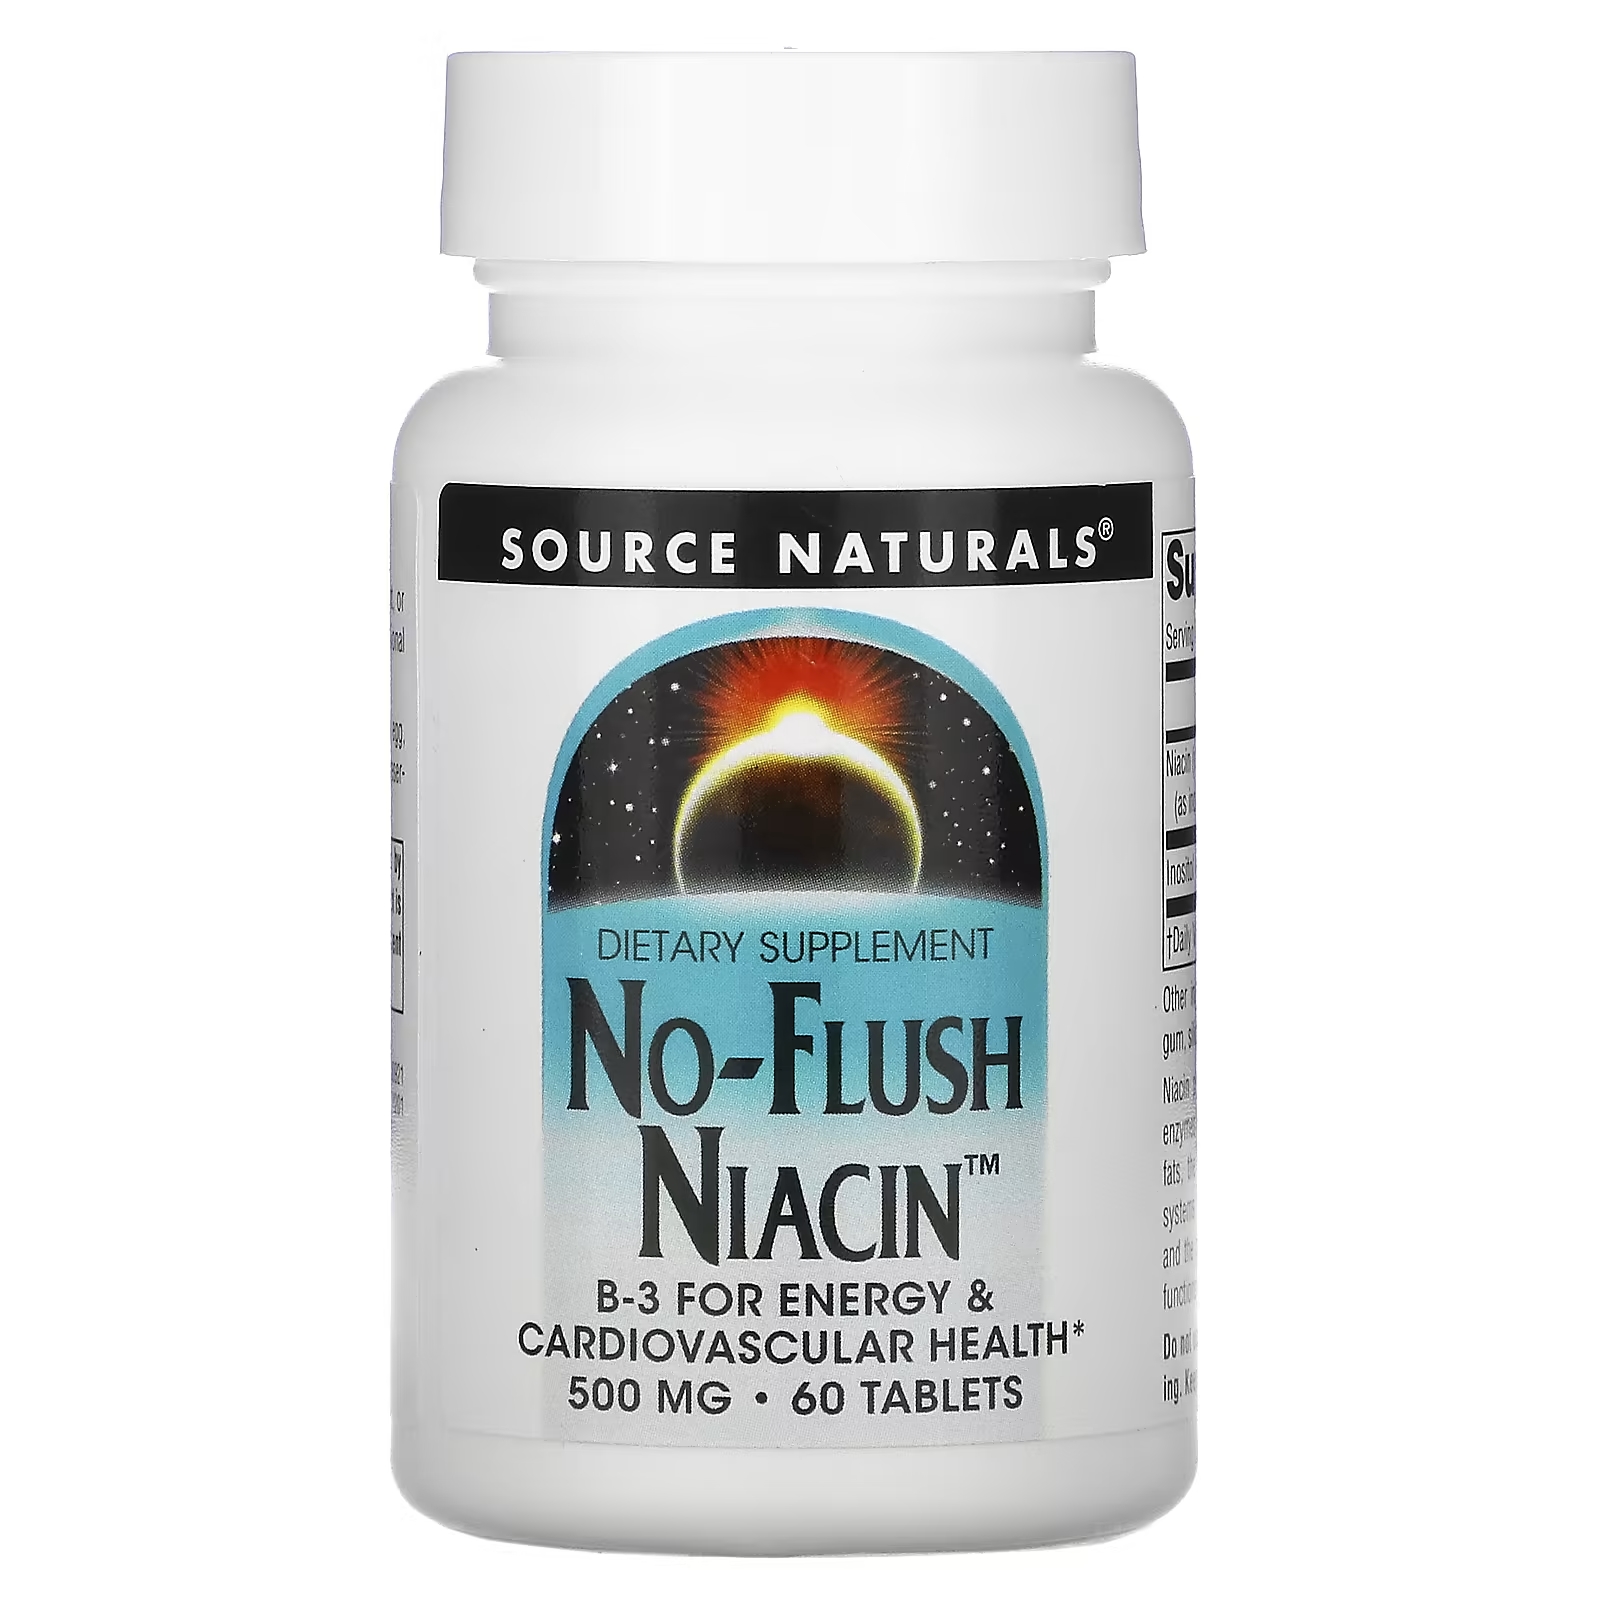 Source Naturals ниацин не вызывает приливов крови 500 мг, 60 таблеток